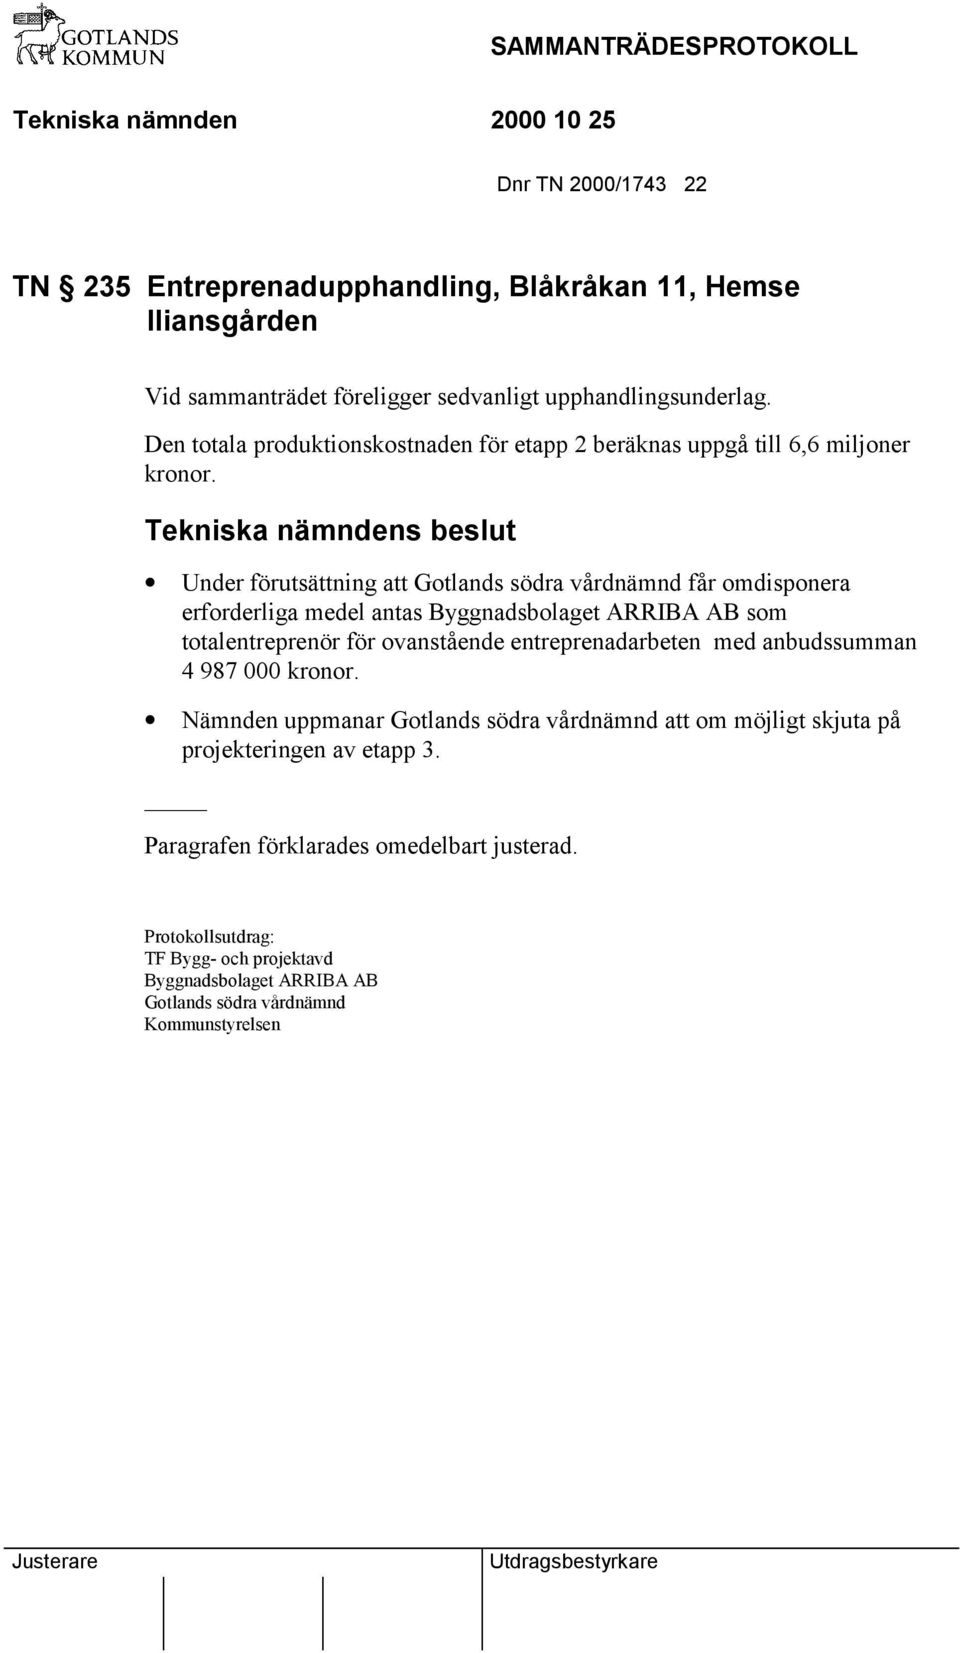 Under förutsättning att Gotlands södra vårdnämnd får omdisponera erforderliga medel antas Byggnadsbolaget ARRIBA AB som totalentreprenör för ovanstående